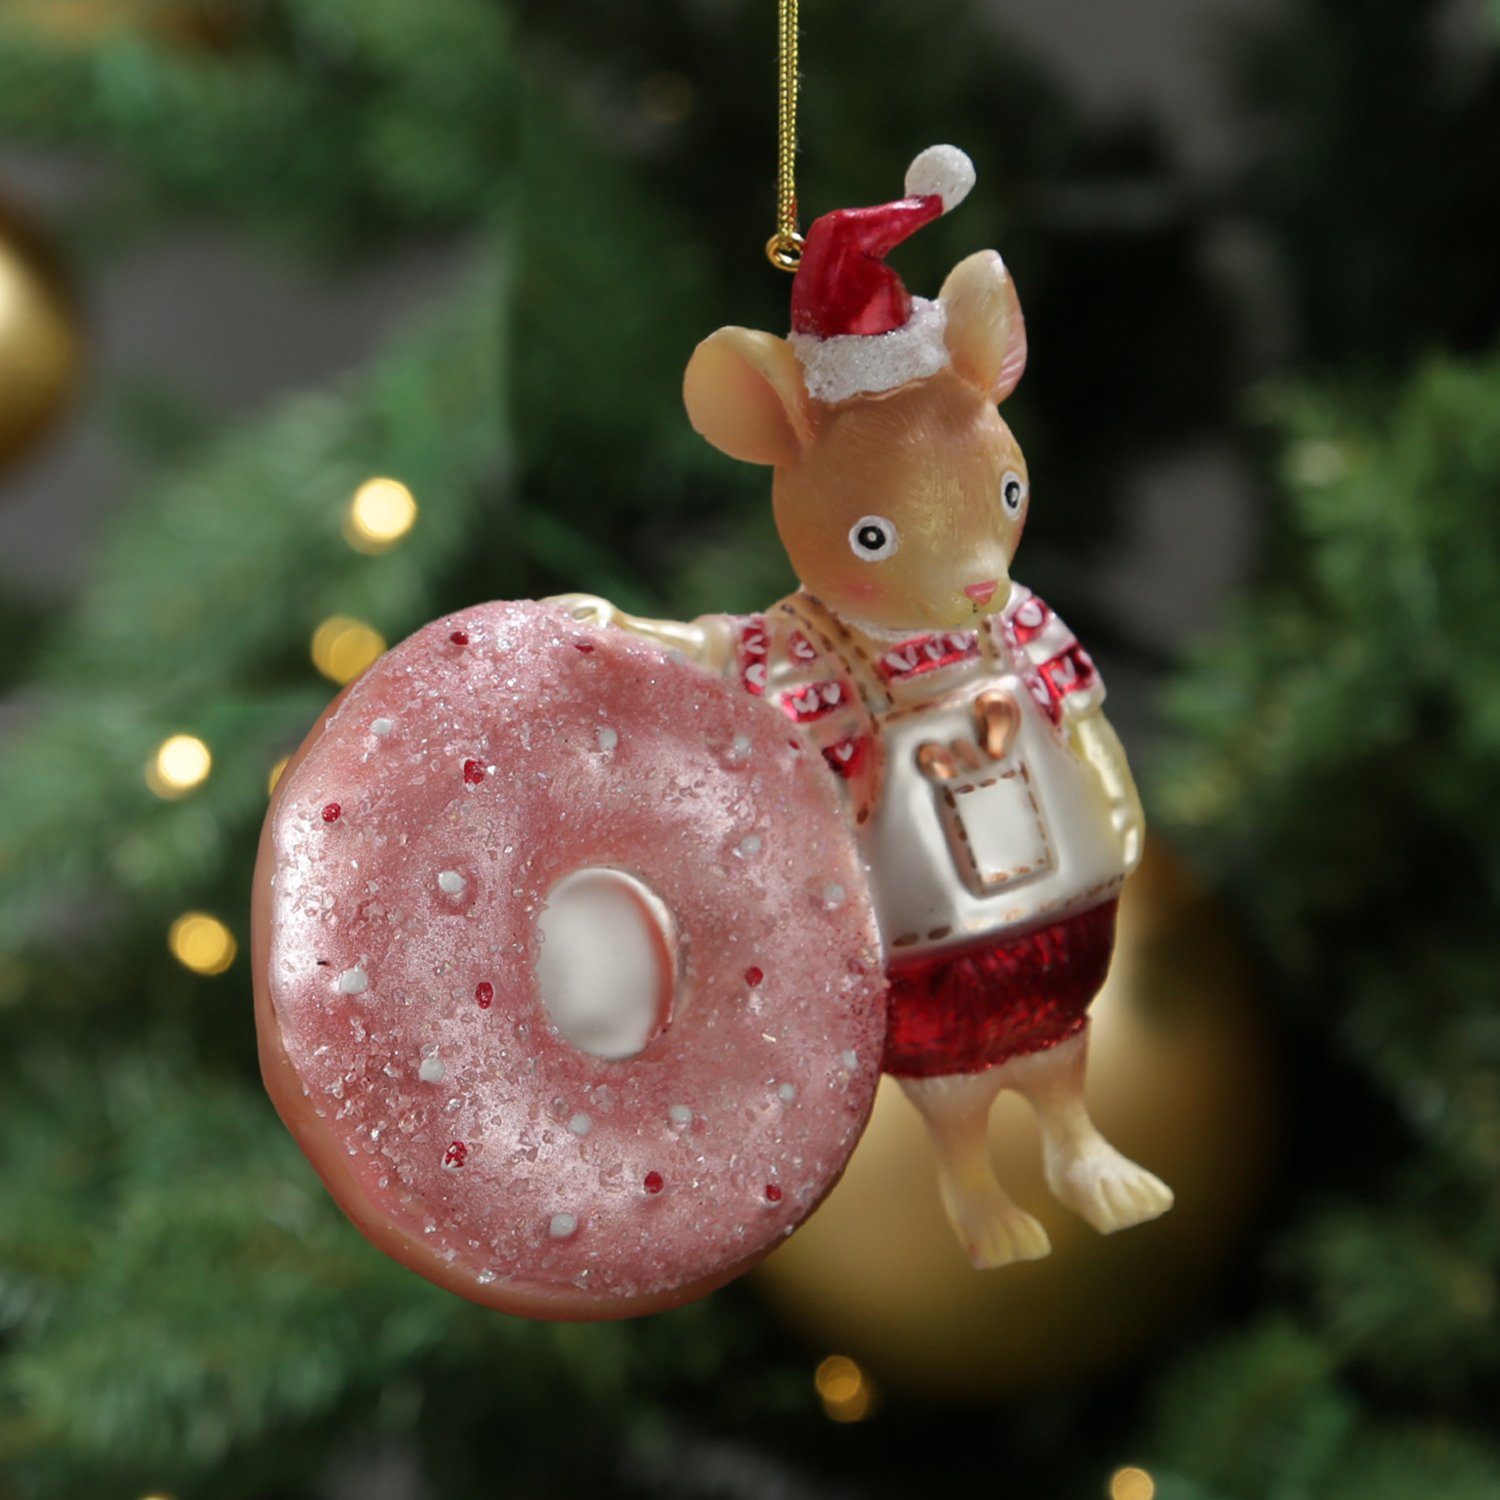 MARELIDA Christbaumschmuck Weihnachtsbaumschmuck Maus mit Glas Weihnachtsbäckerei Donut 11,5cm H